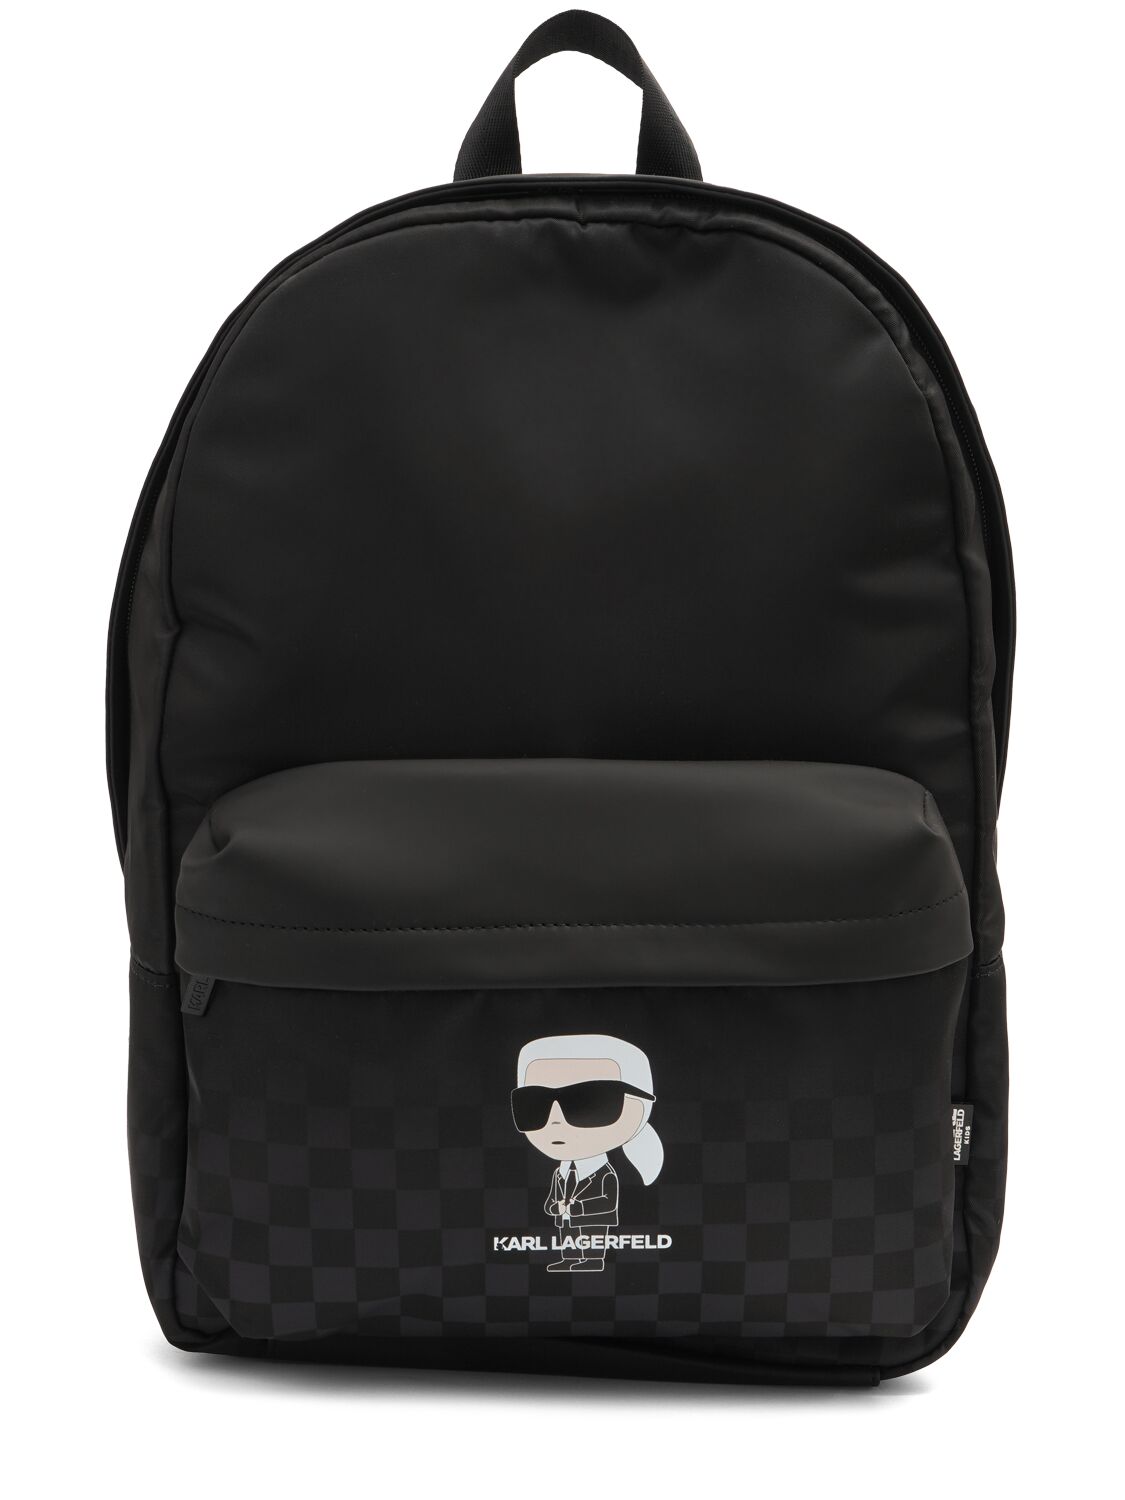 Karl Lagerfeld Kids' Printed Twill Backpack In Black